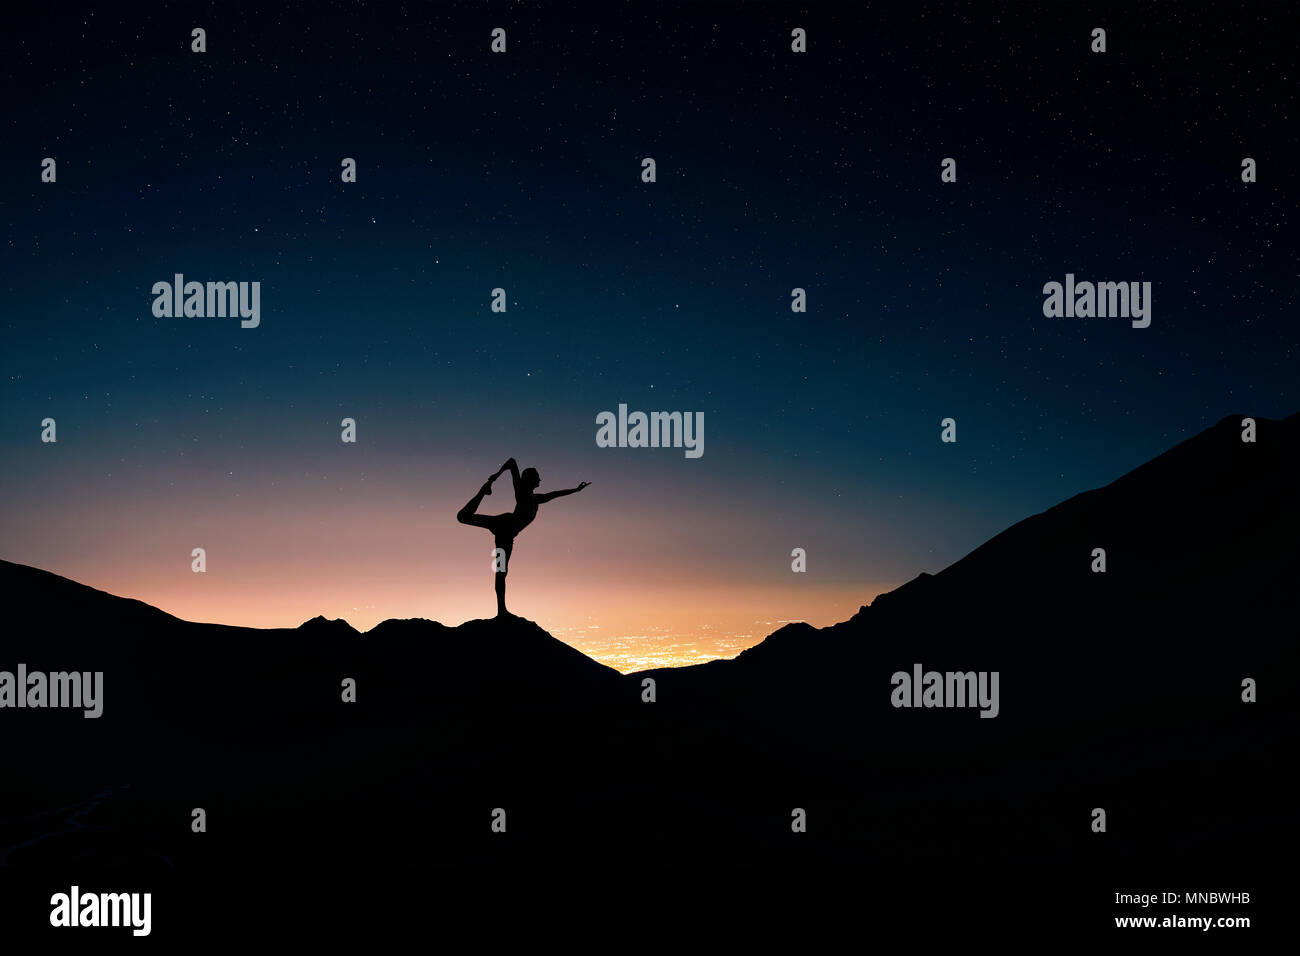 Passen Mann in silhouette Yoga natarajasana Pose in der Nacht Ort und Sternenhimmel Hintergrund Stockfoto